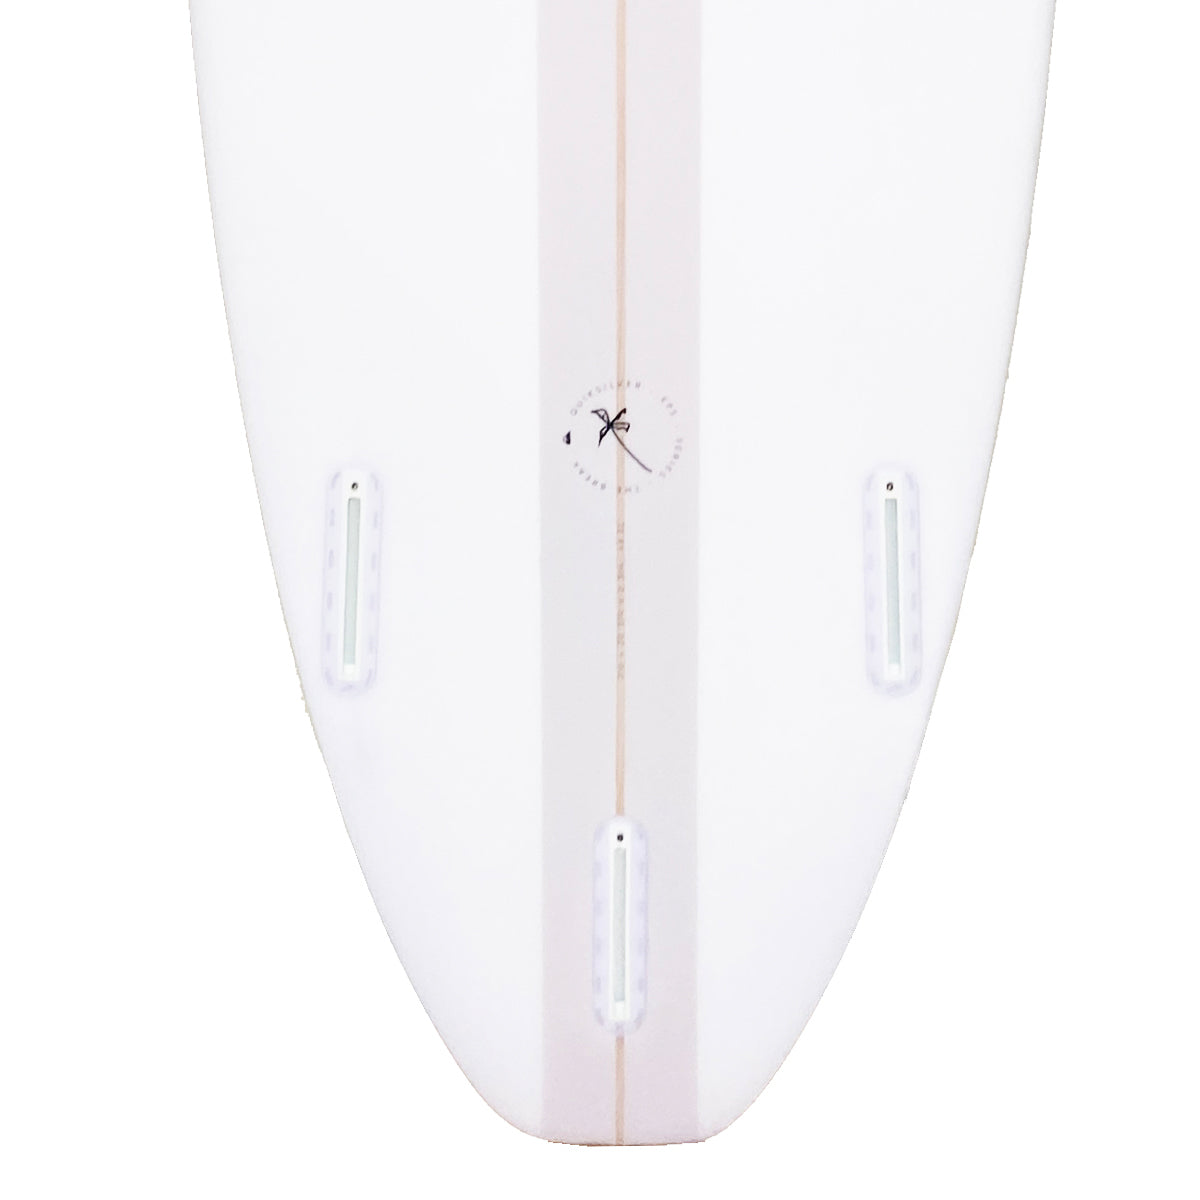 QS BREAK 7'0 SURFBOARD